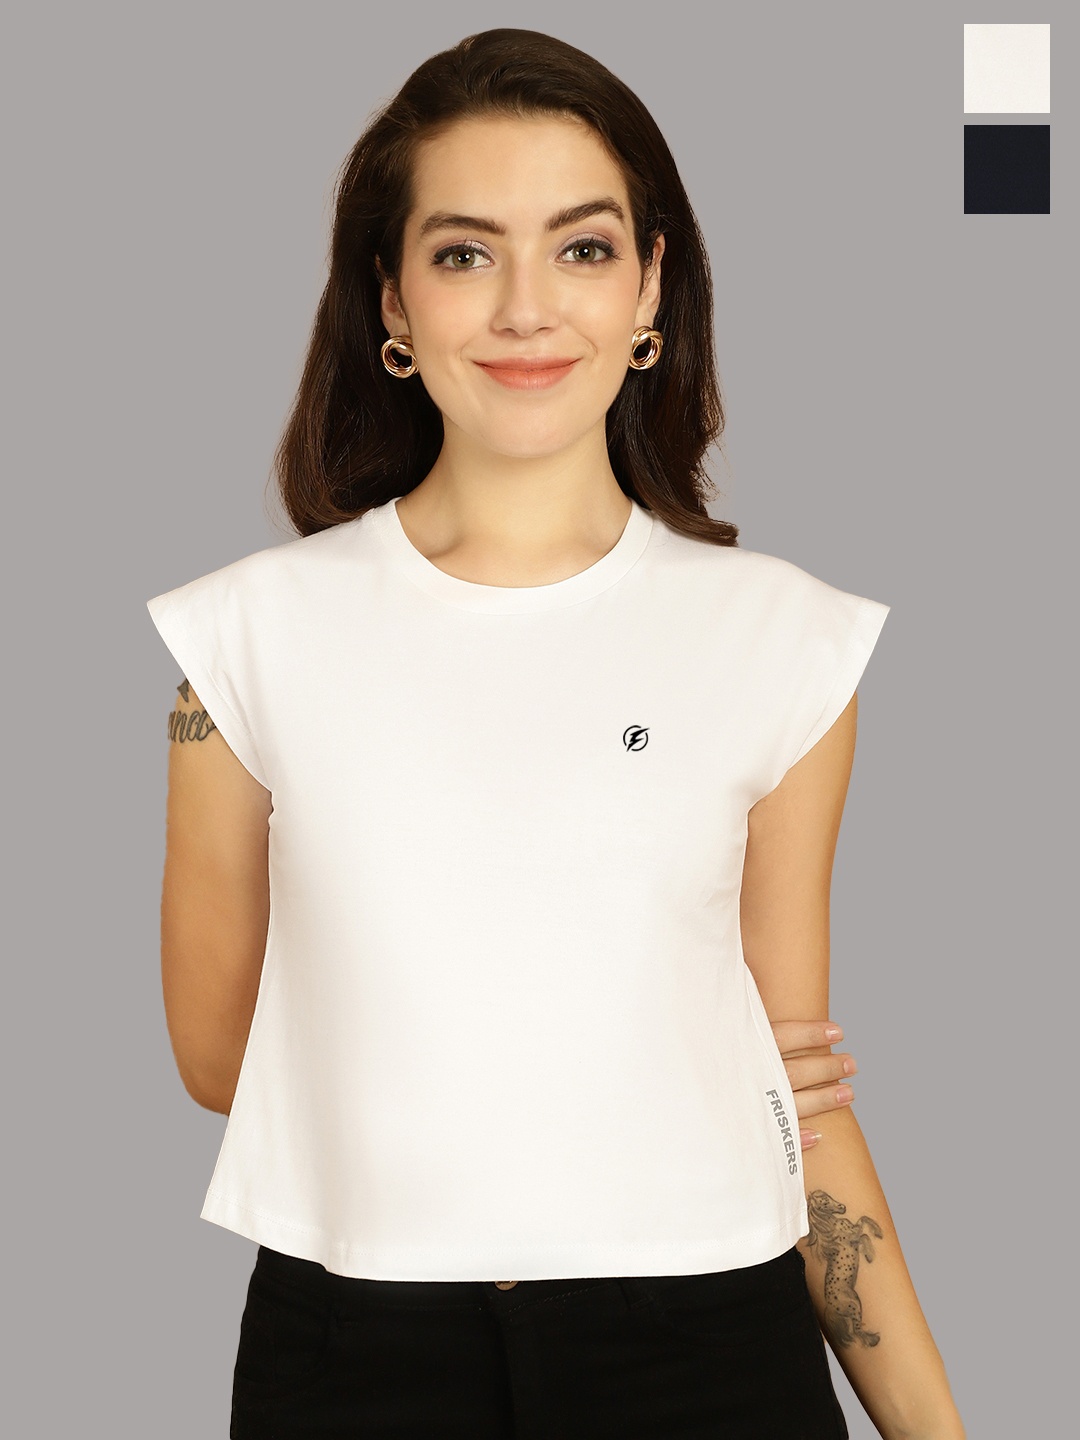 

Friskers Women White 2 Applique T-shirt